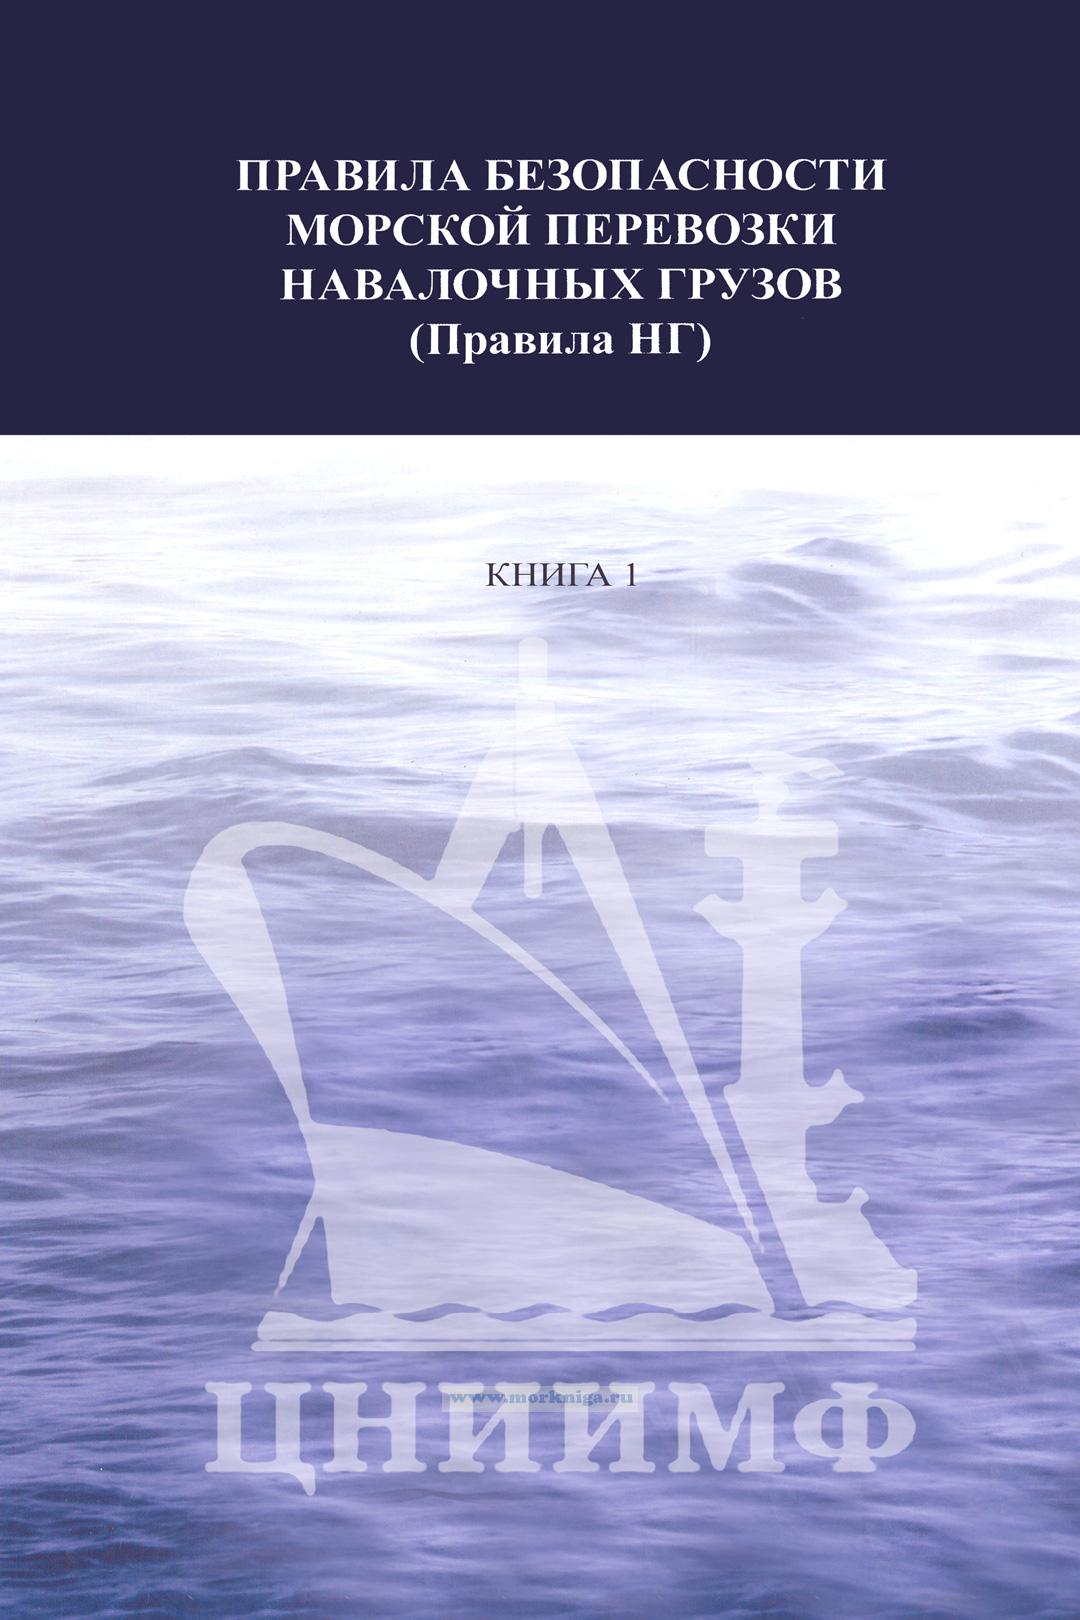 Правила безопасности морской перевозки навалочных грузов (Правила НГ). Книга 1. СТО 318.1.38-2009